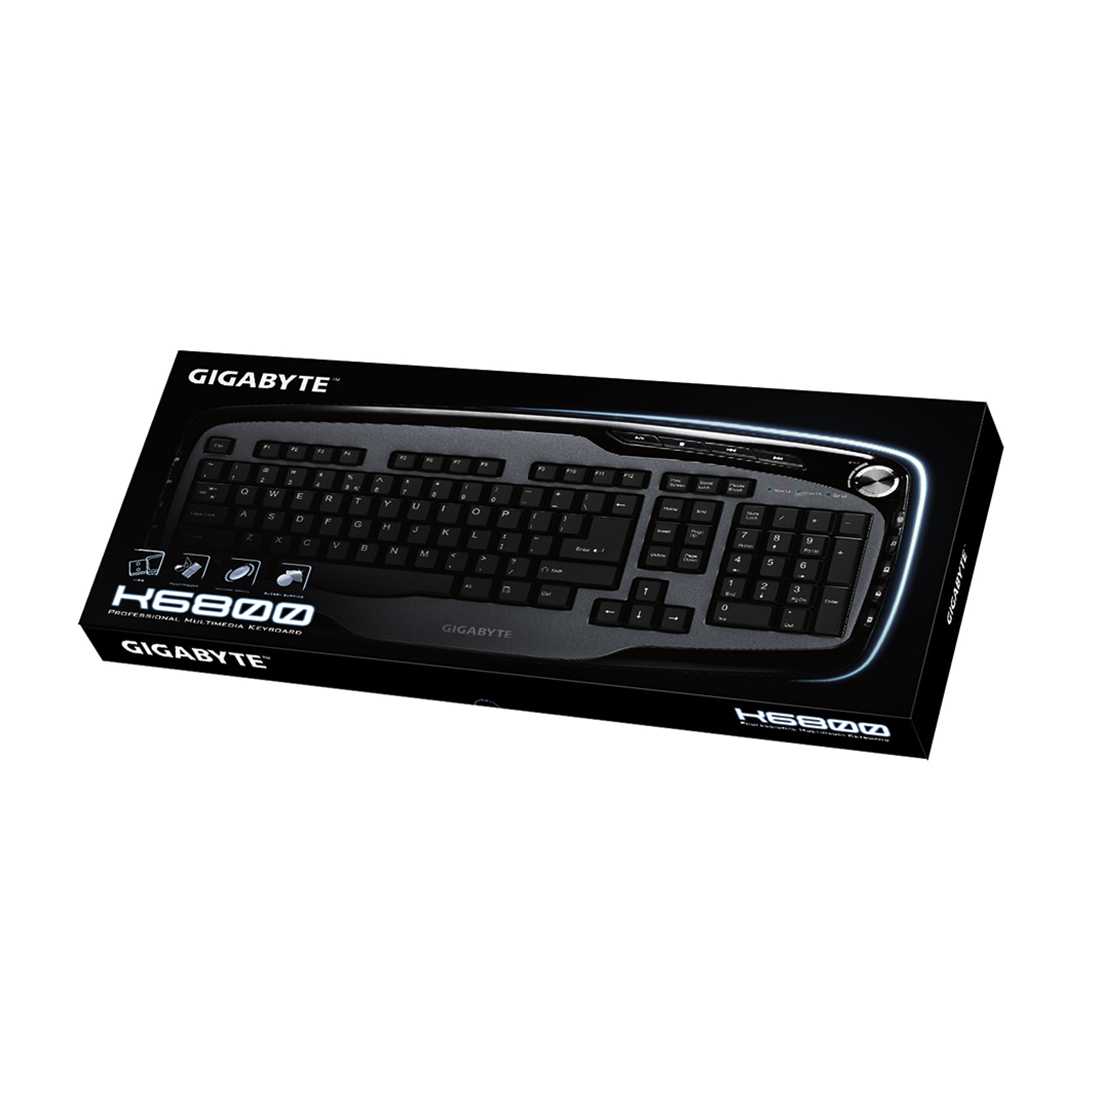 Gigabyte gk-k6800 usb (черный) - купить , скидки, цена, отзывы, обзор, характеристики - клавиатуры